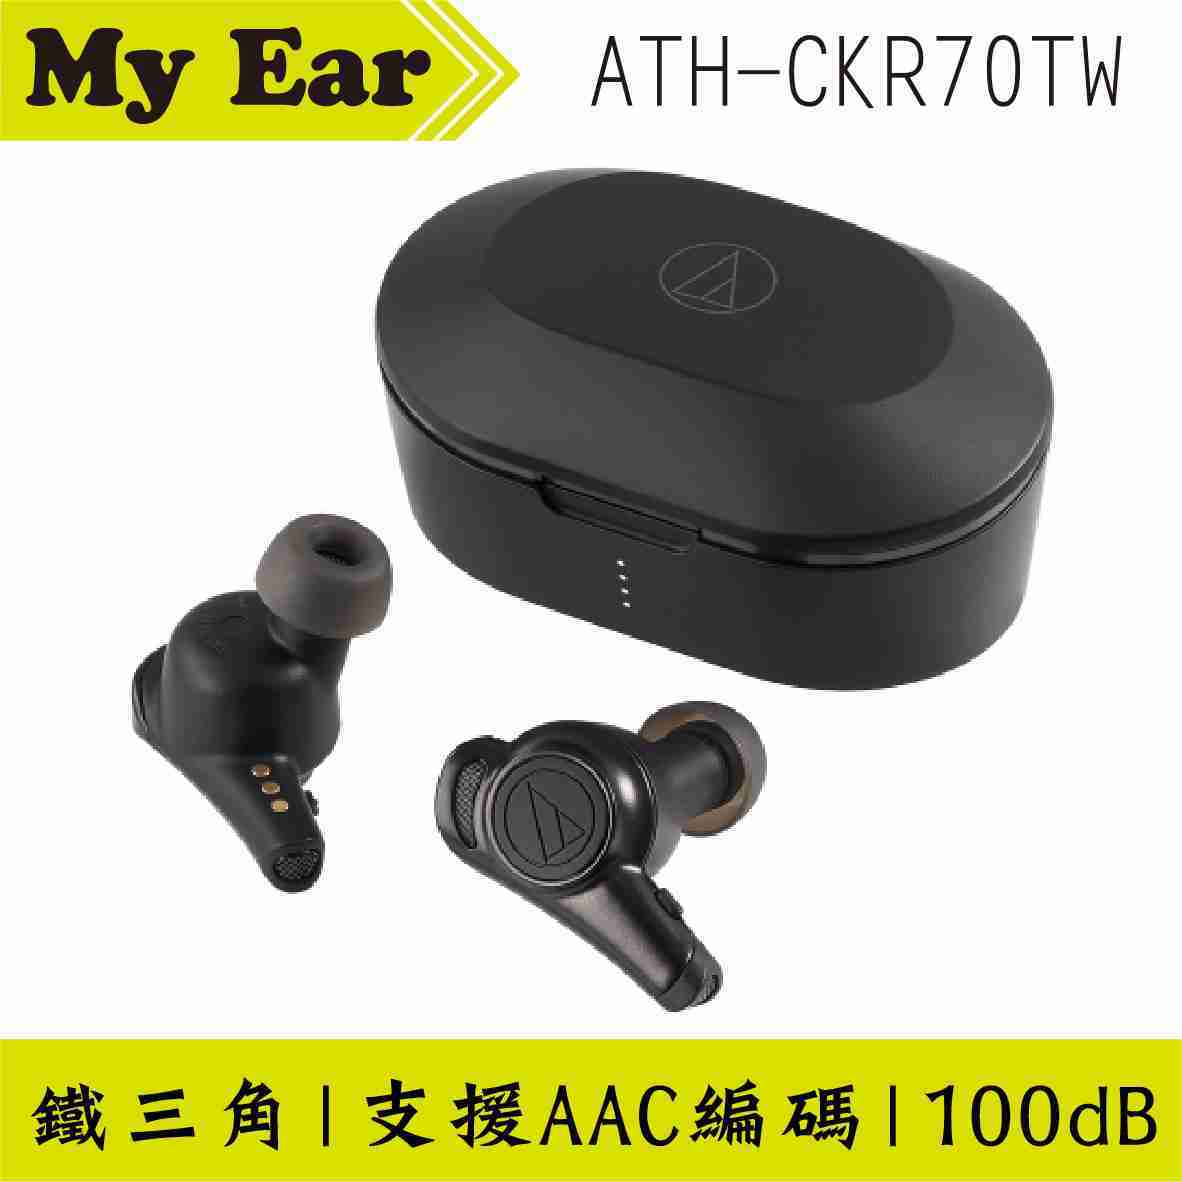 鐵三角 ATH-CKR70TW 黑色 可單耳使用 真無線 藍芽 耳機 | My Ear 耳機專門店